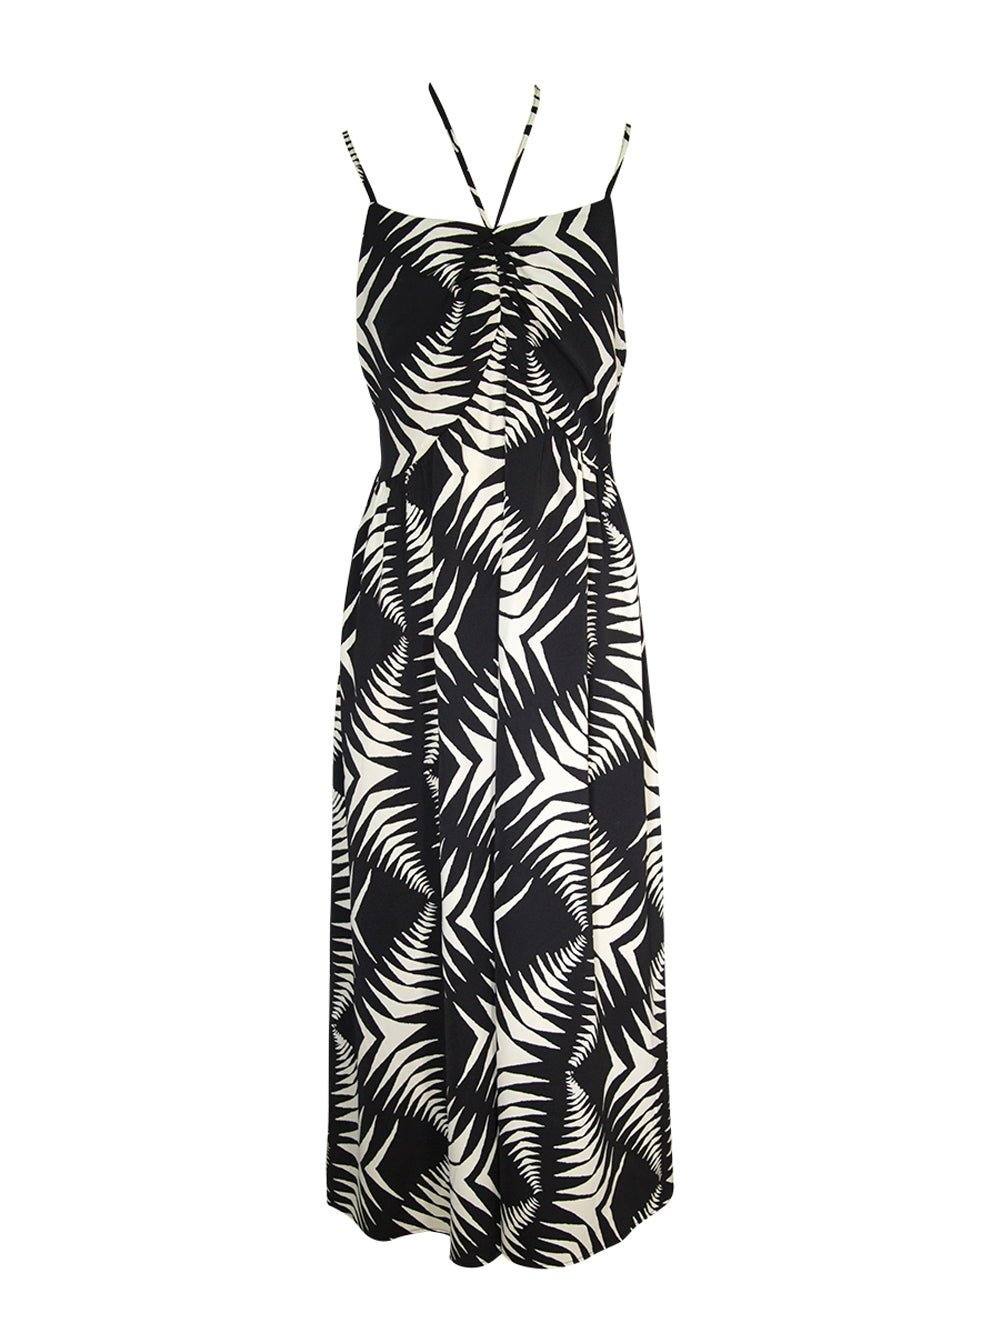 Geometric Print Halter Dress - Black & White - OCEAN MYSTERY